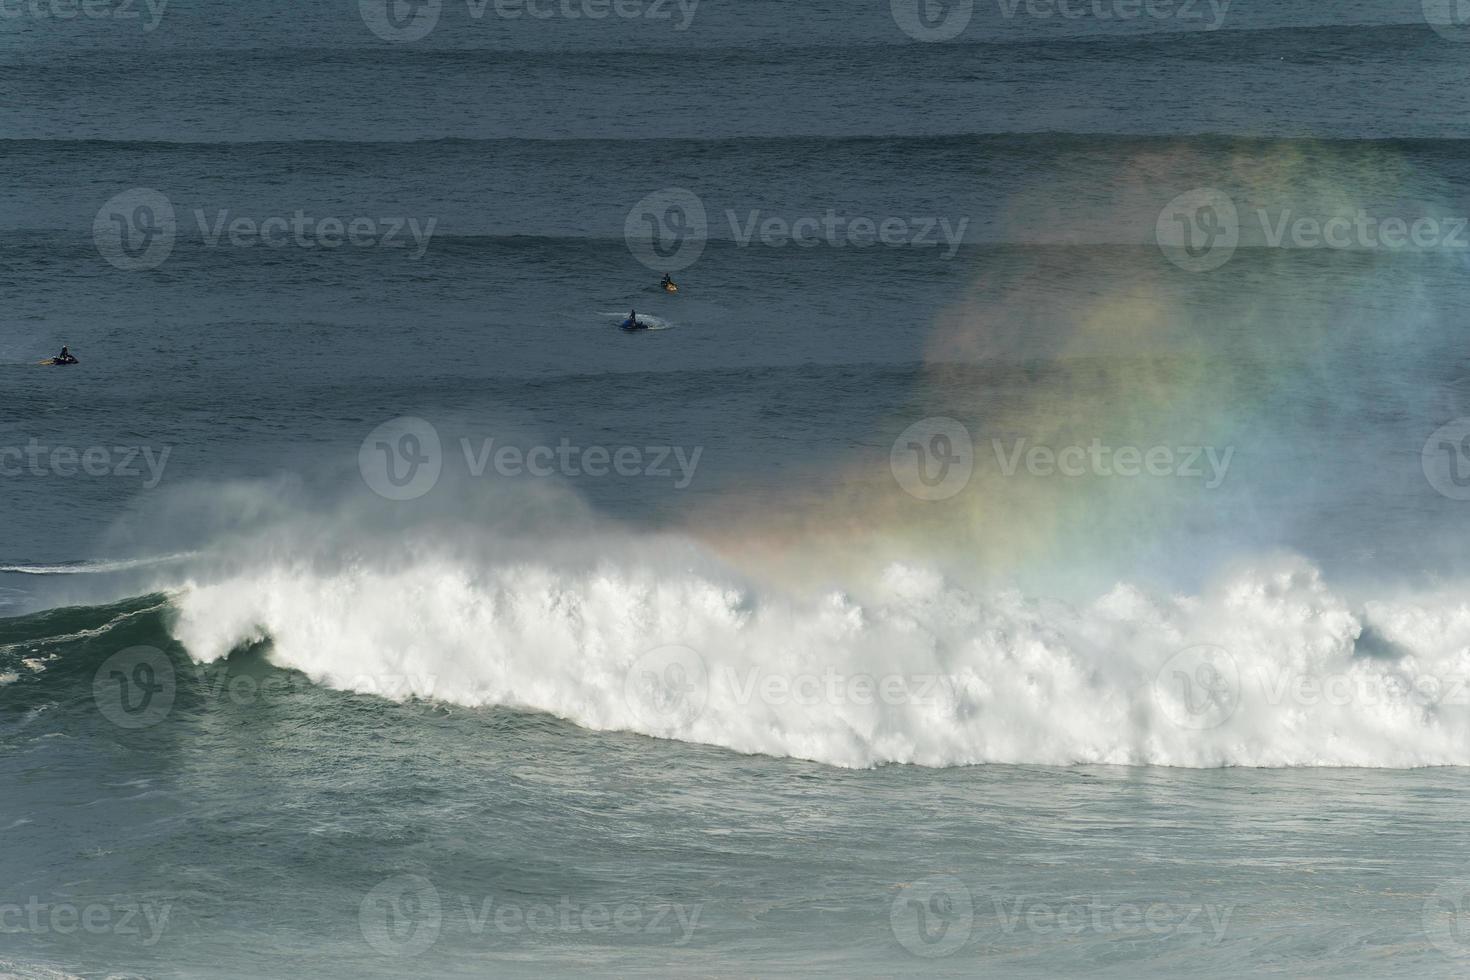 große riesige wellen, die in nazare, portugal, zusammenbrechen und einen regenbogen im ozean schaffen. Surfer und Jetskis im Wasser. größten wellen der welt. touristisches Ziel zum Surfen. foto